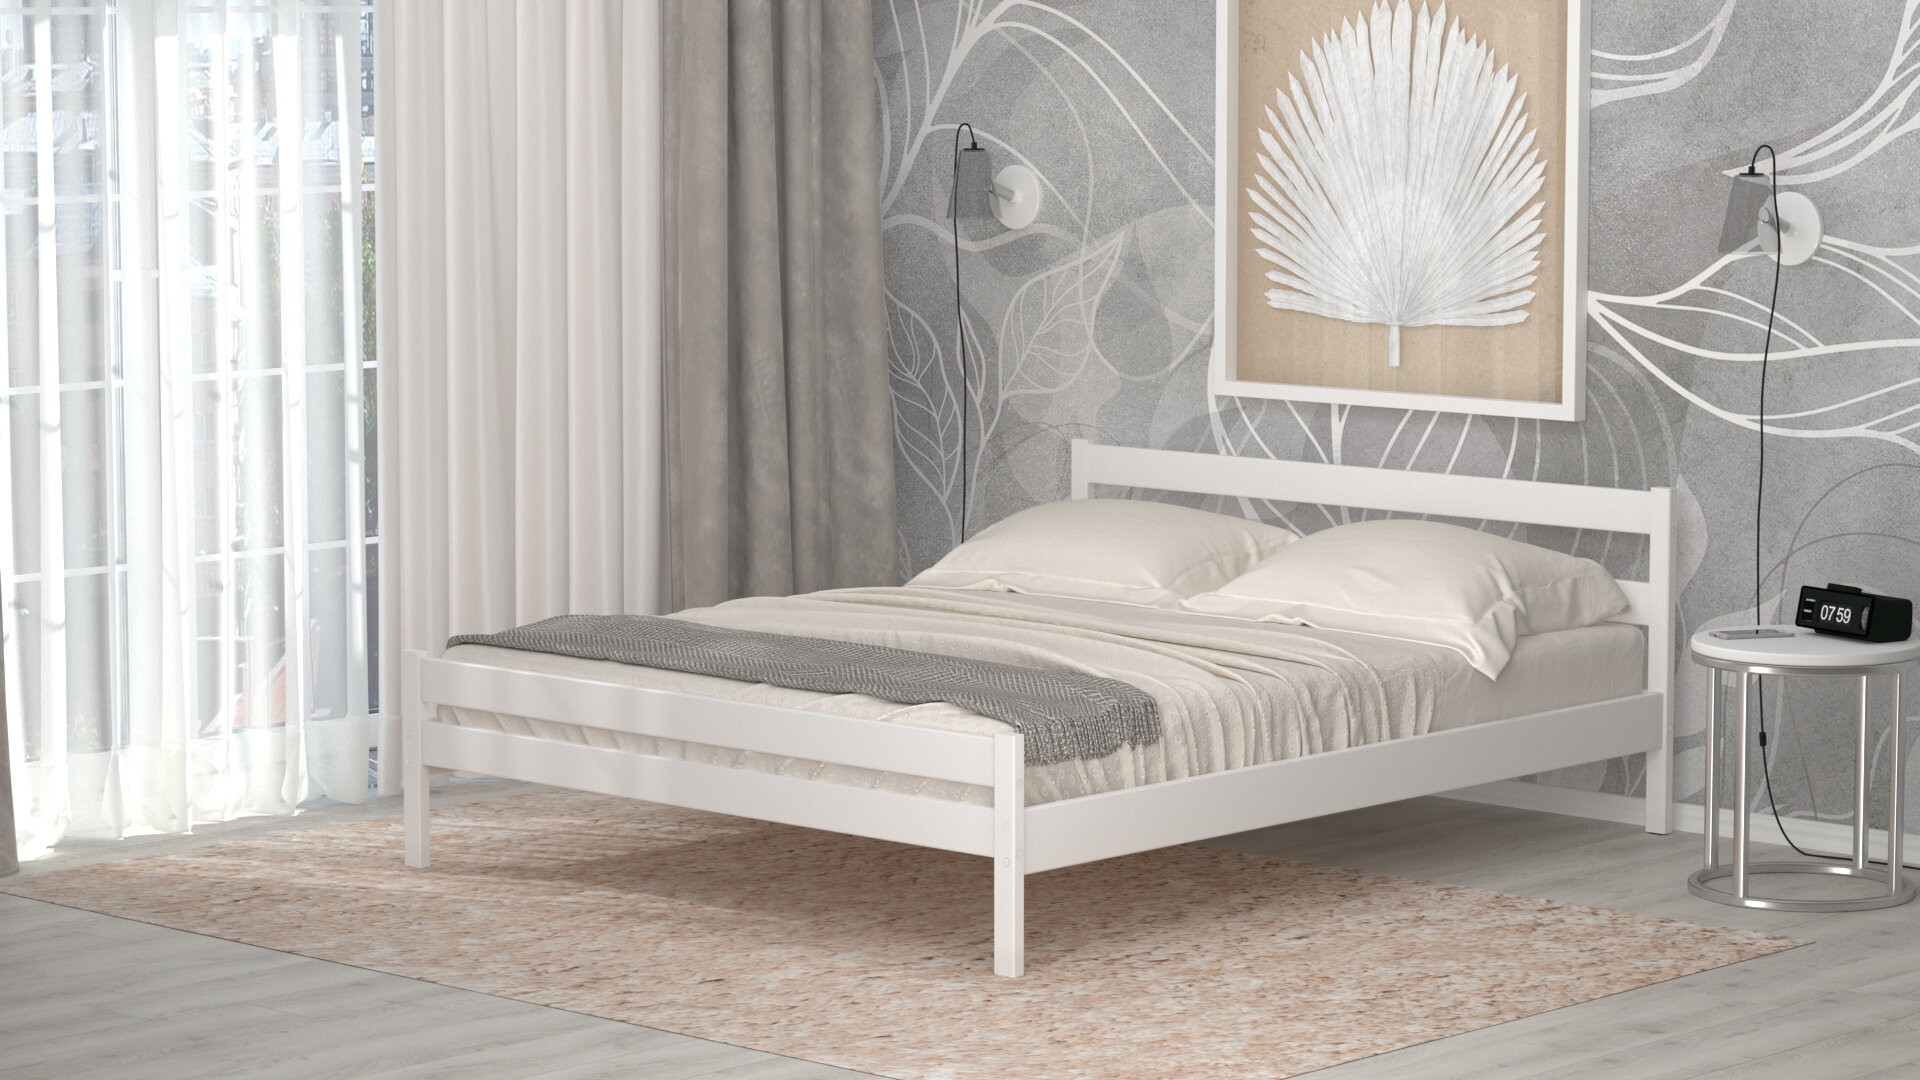 Кровать двуспальная деревянная из массива березы 160х200 см белая